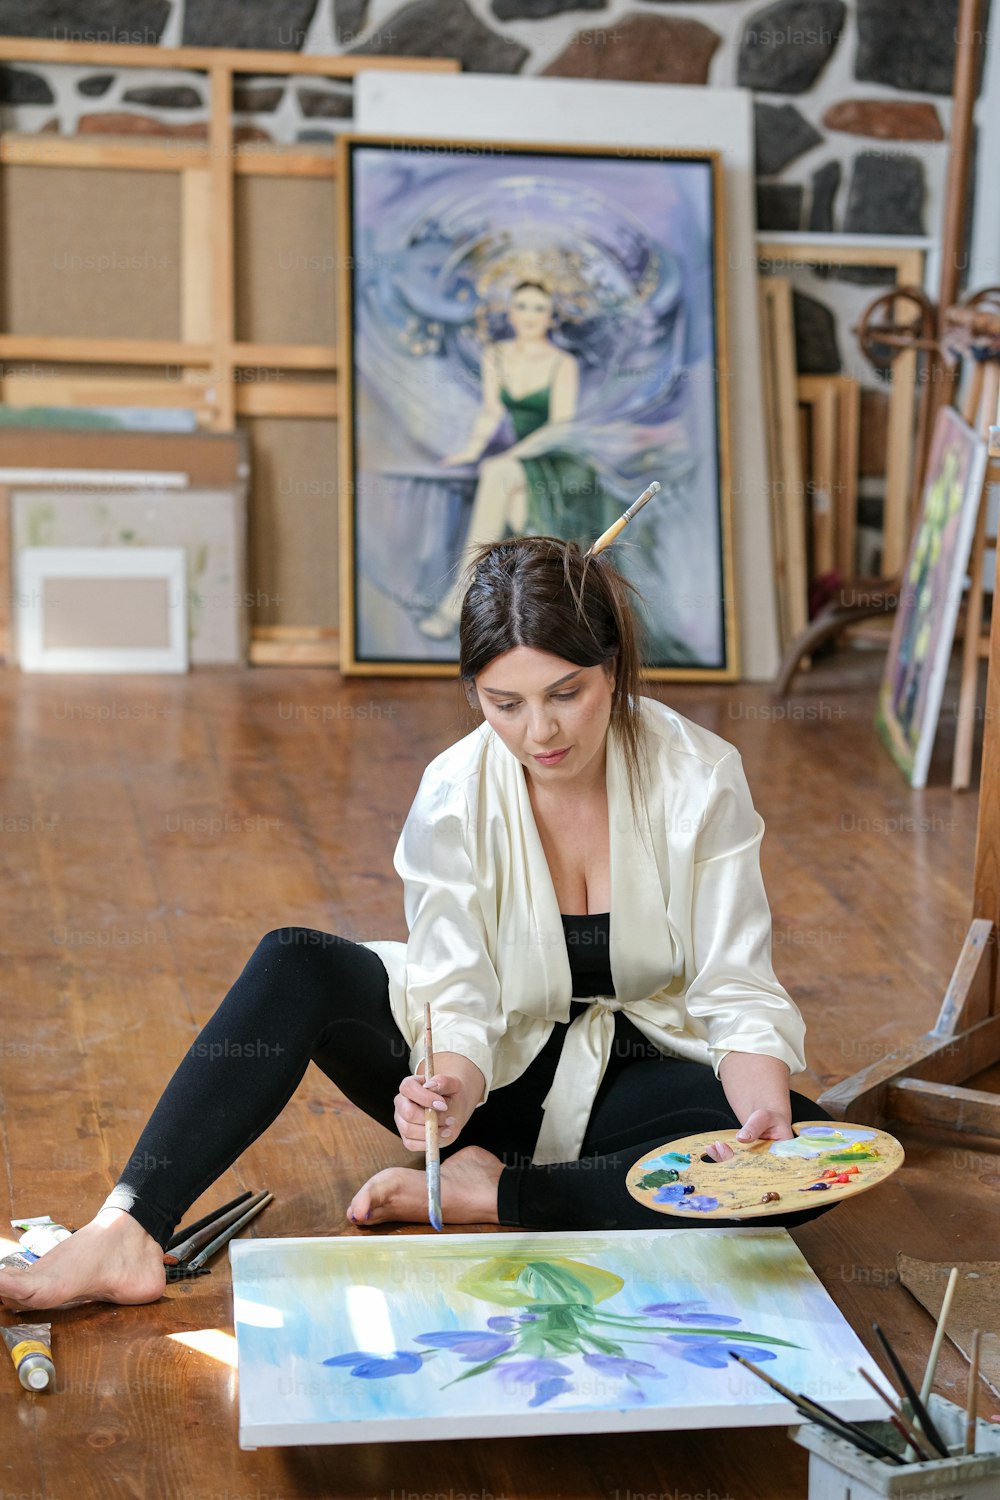 Una donna seduta sul pavimento che dipinge un quadro